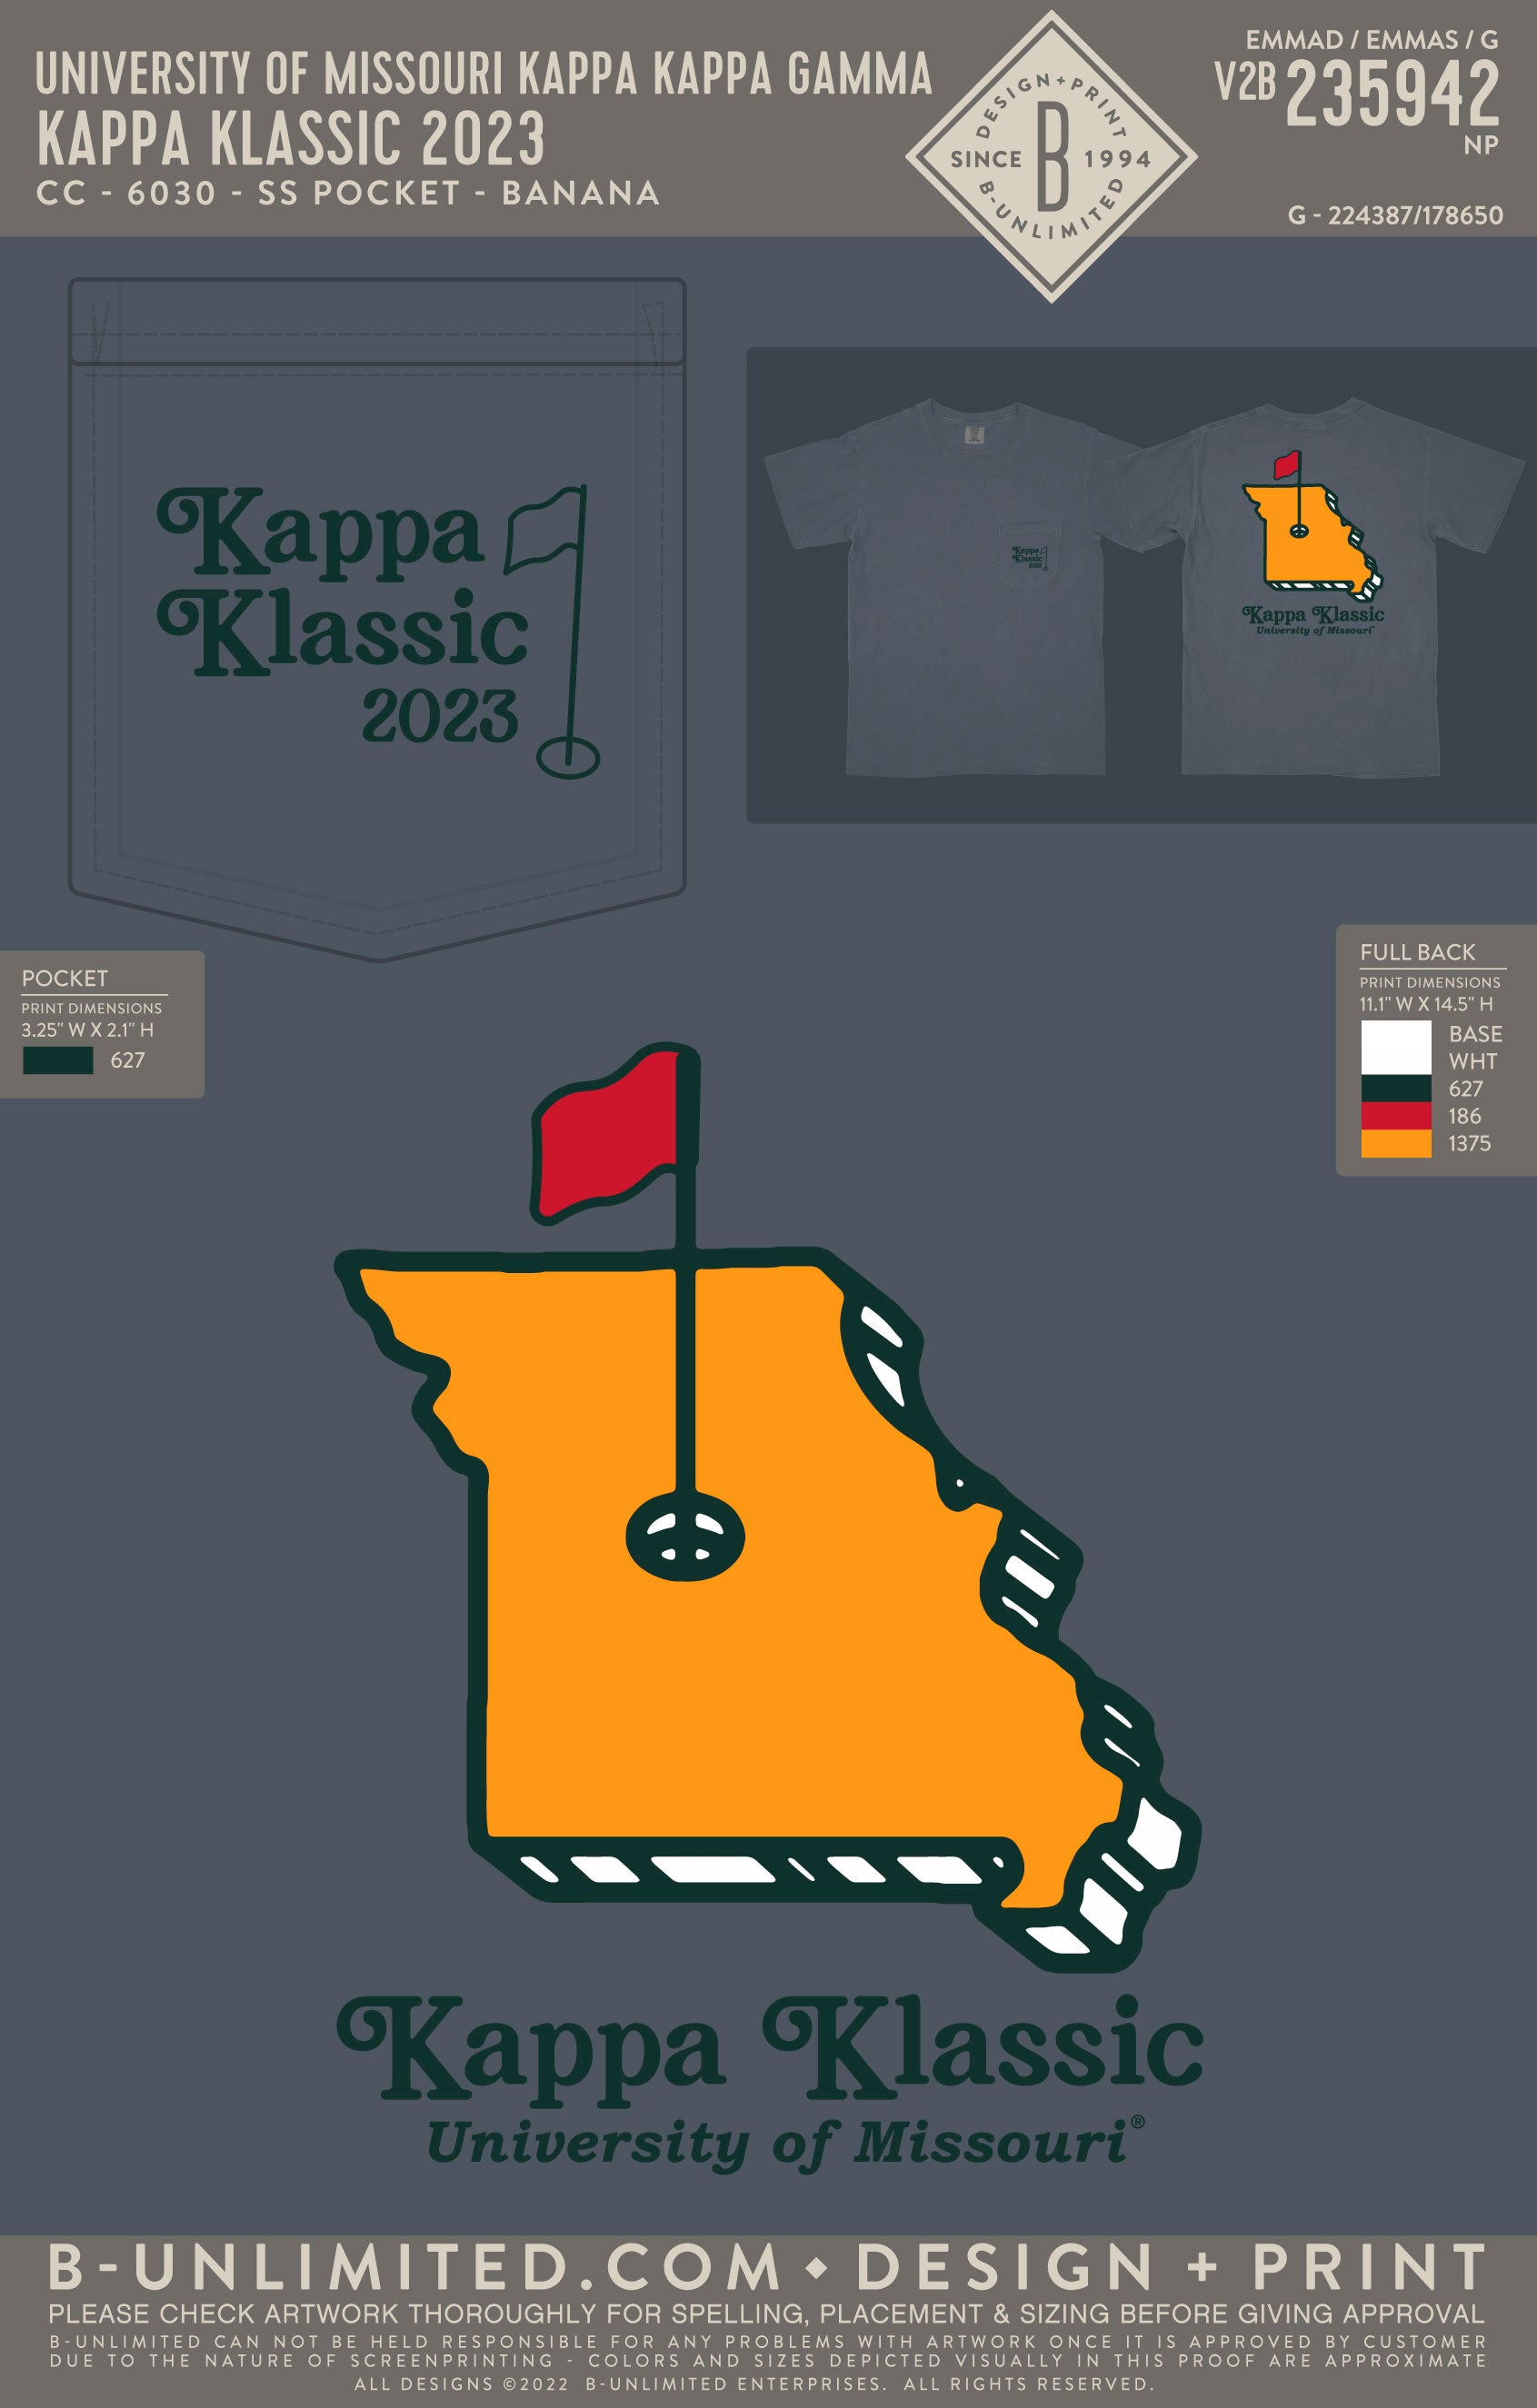 University of Missouri Kappa Kappa Gamma - Kappa Klassic 2023 - CC - 6030 - SS Pocket - Denim